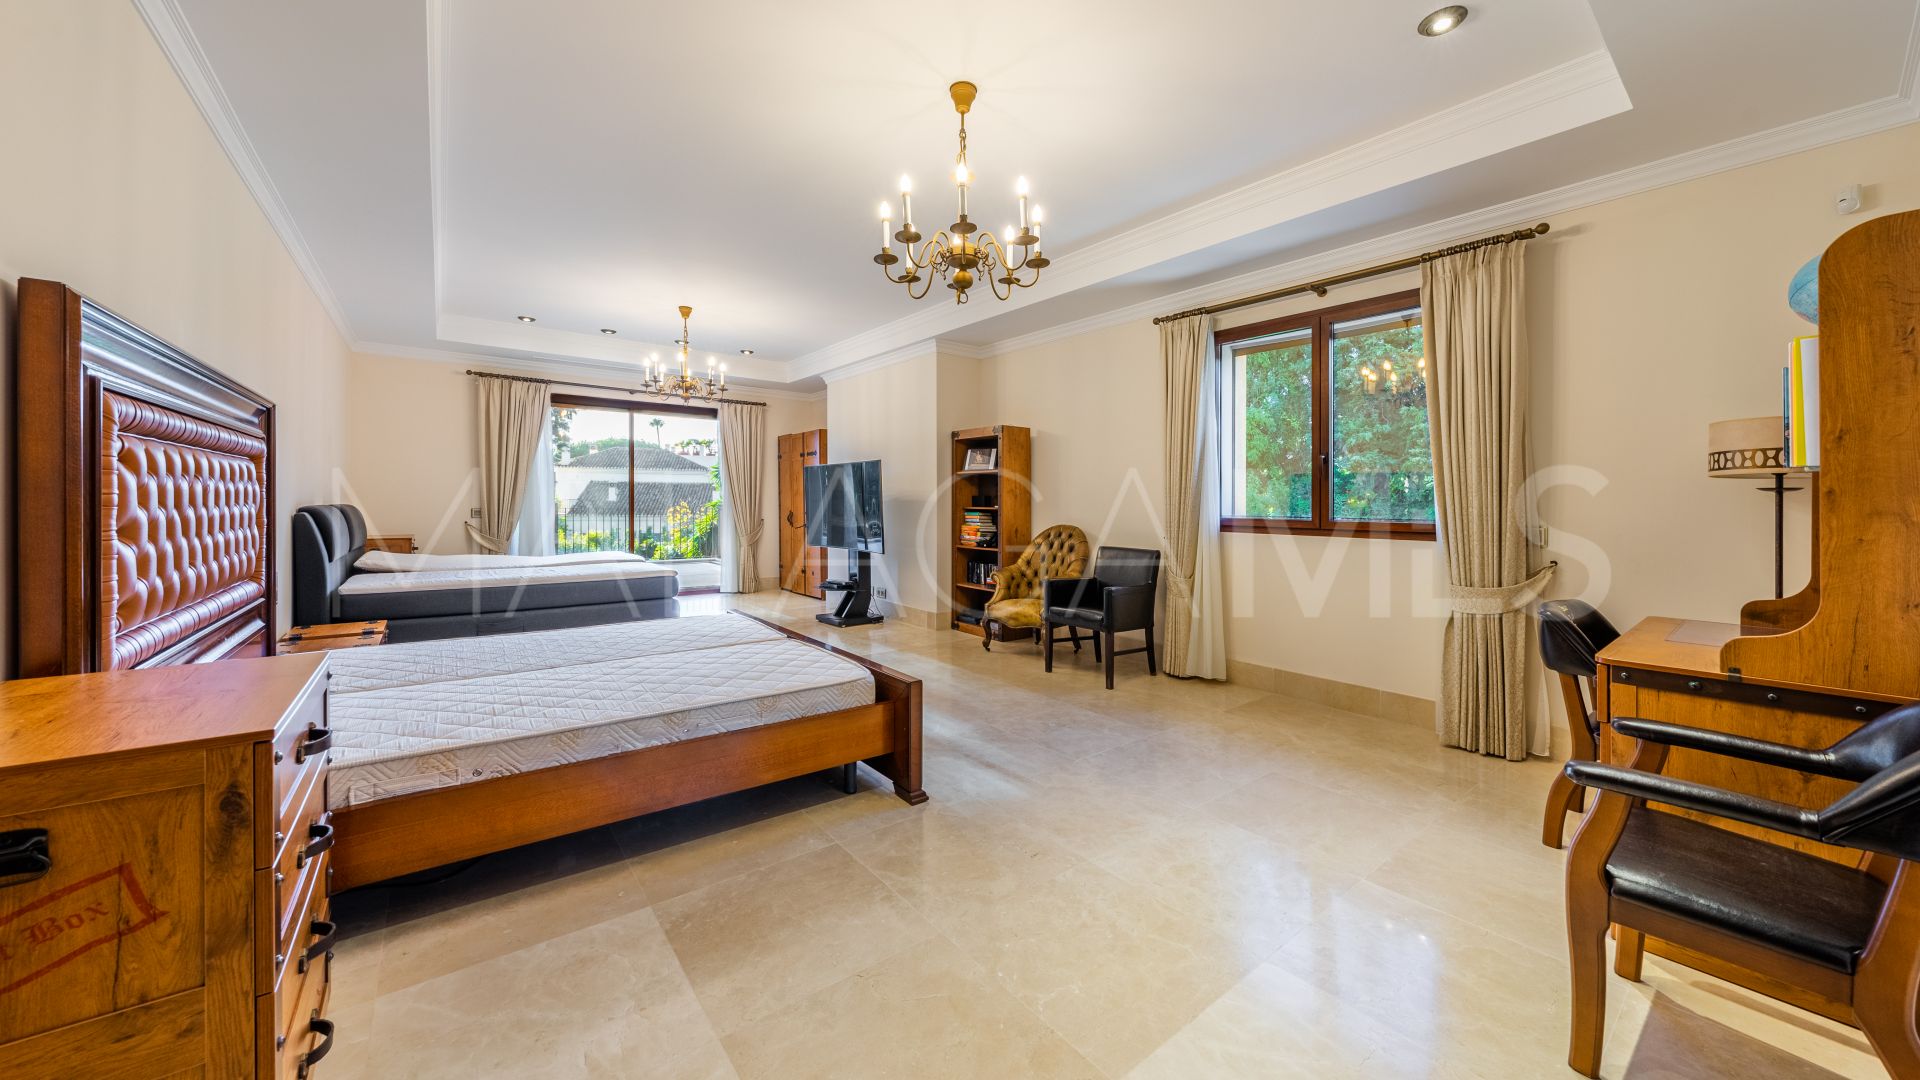 6 bedrooms villa in Guadalmina Baja for sale